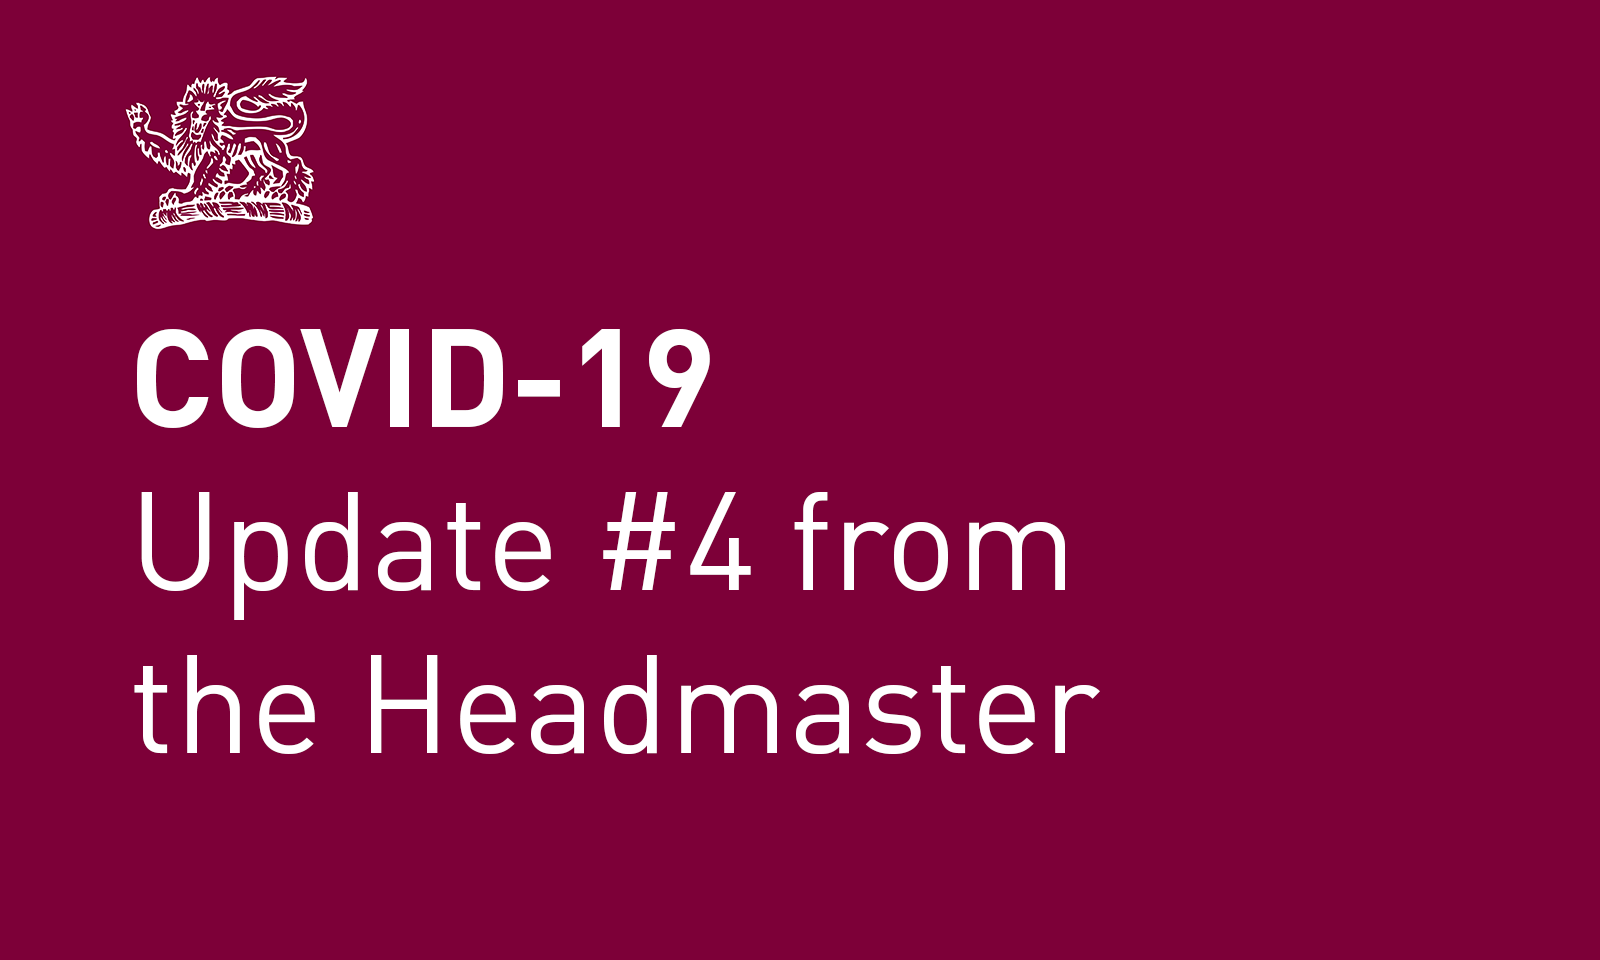 Coronavirus (COVID-19) update #4 from the Headmaster